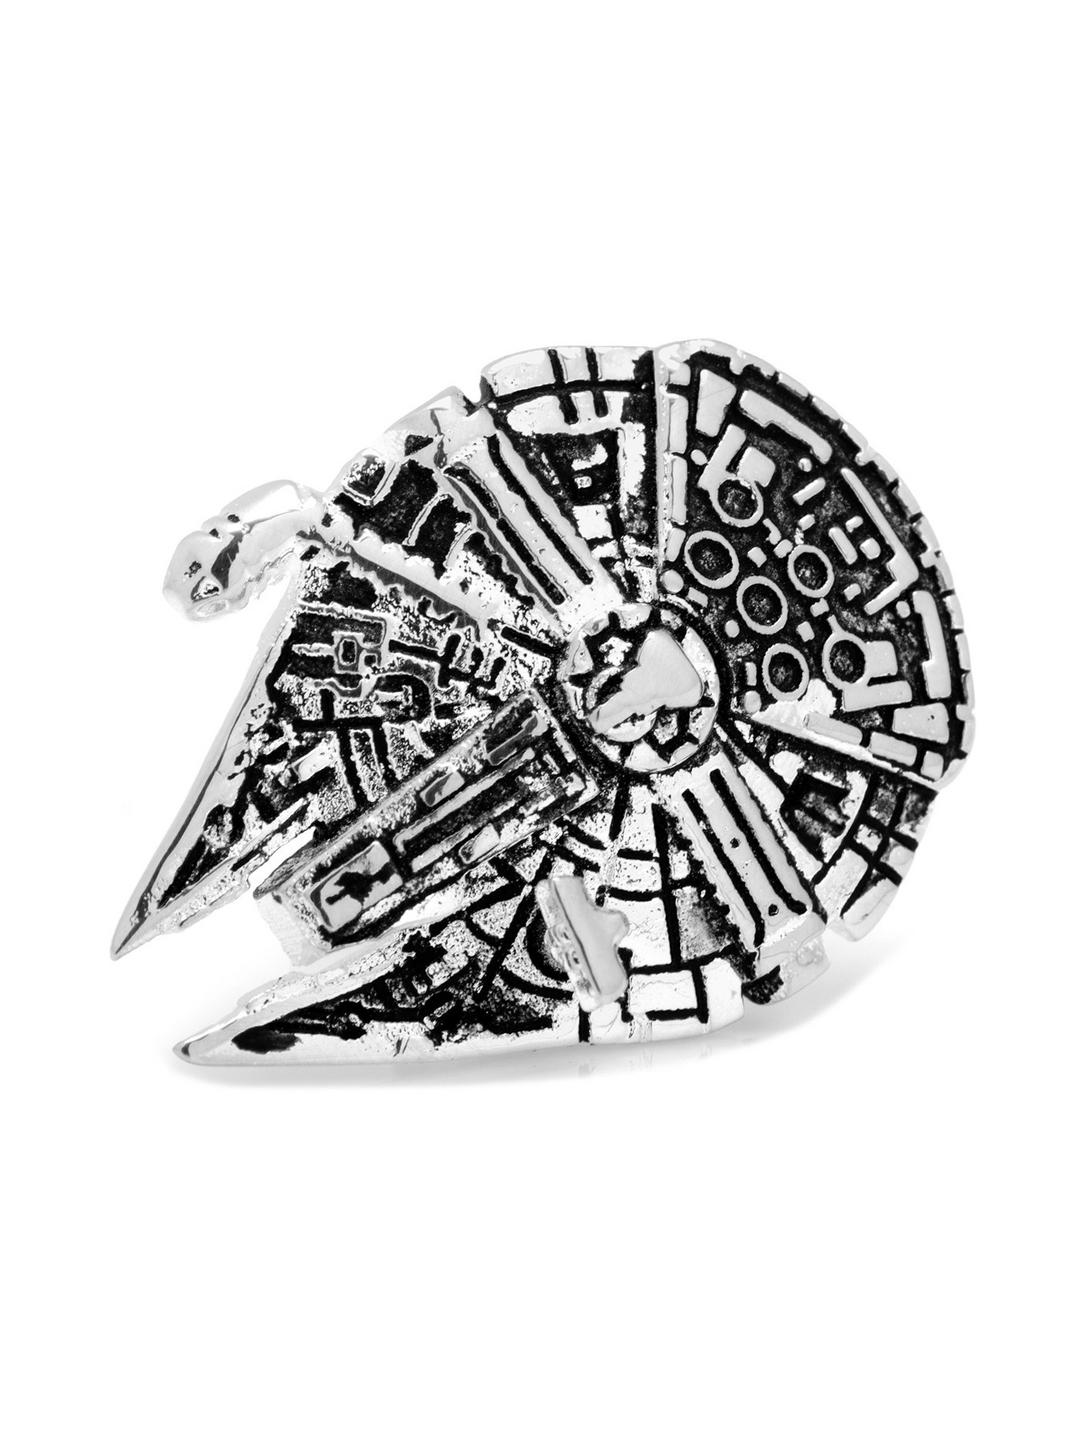 3D Star Wars Millennium Falcon Lapel Pin, , hi-res